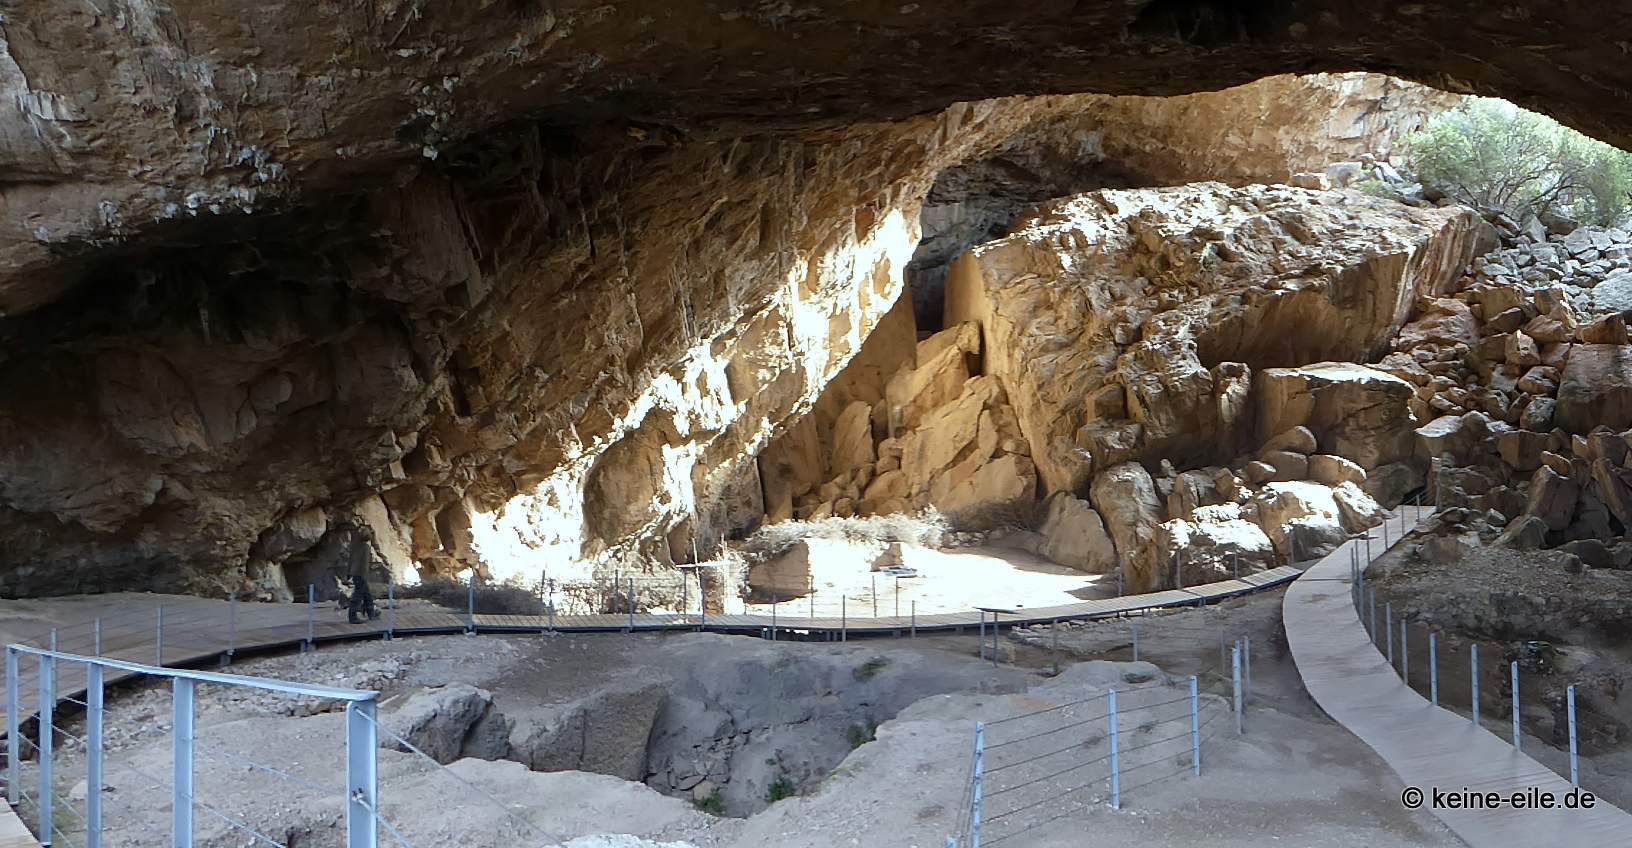 Besichtigung der Franchthi Höhle